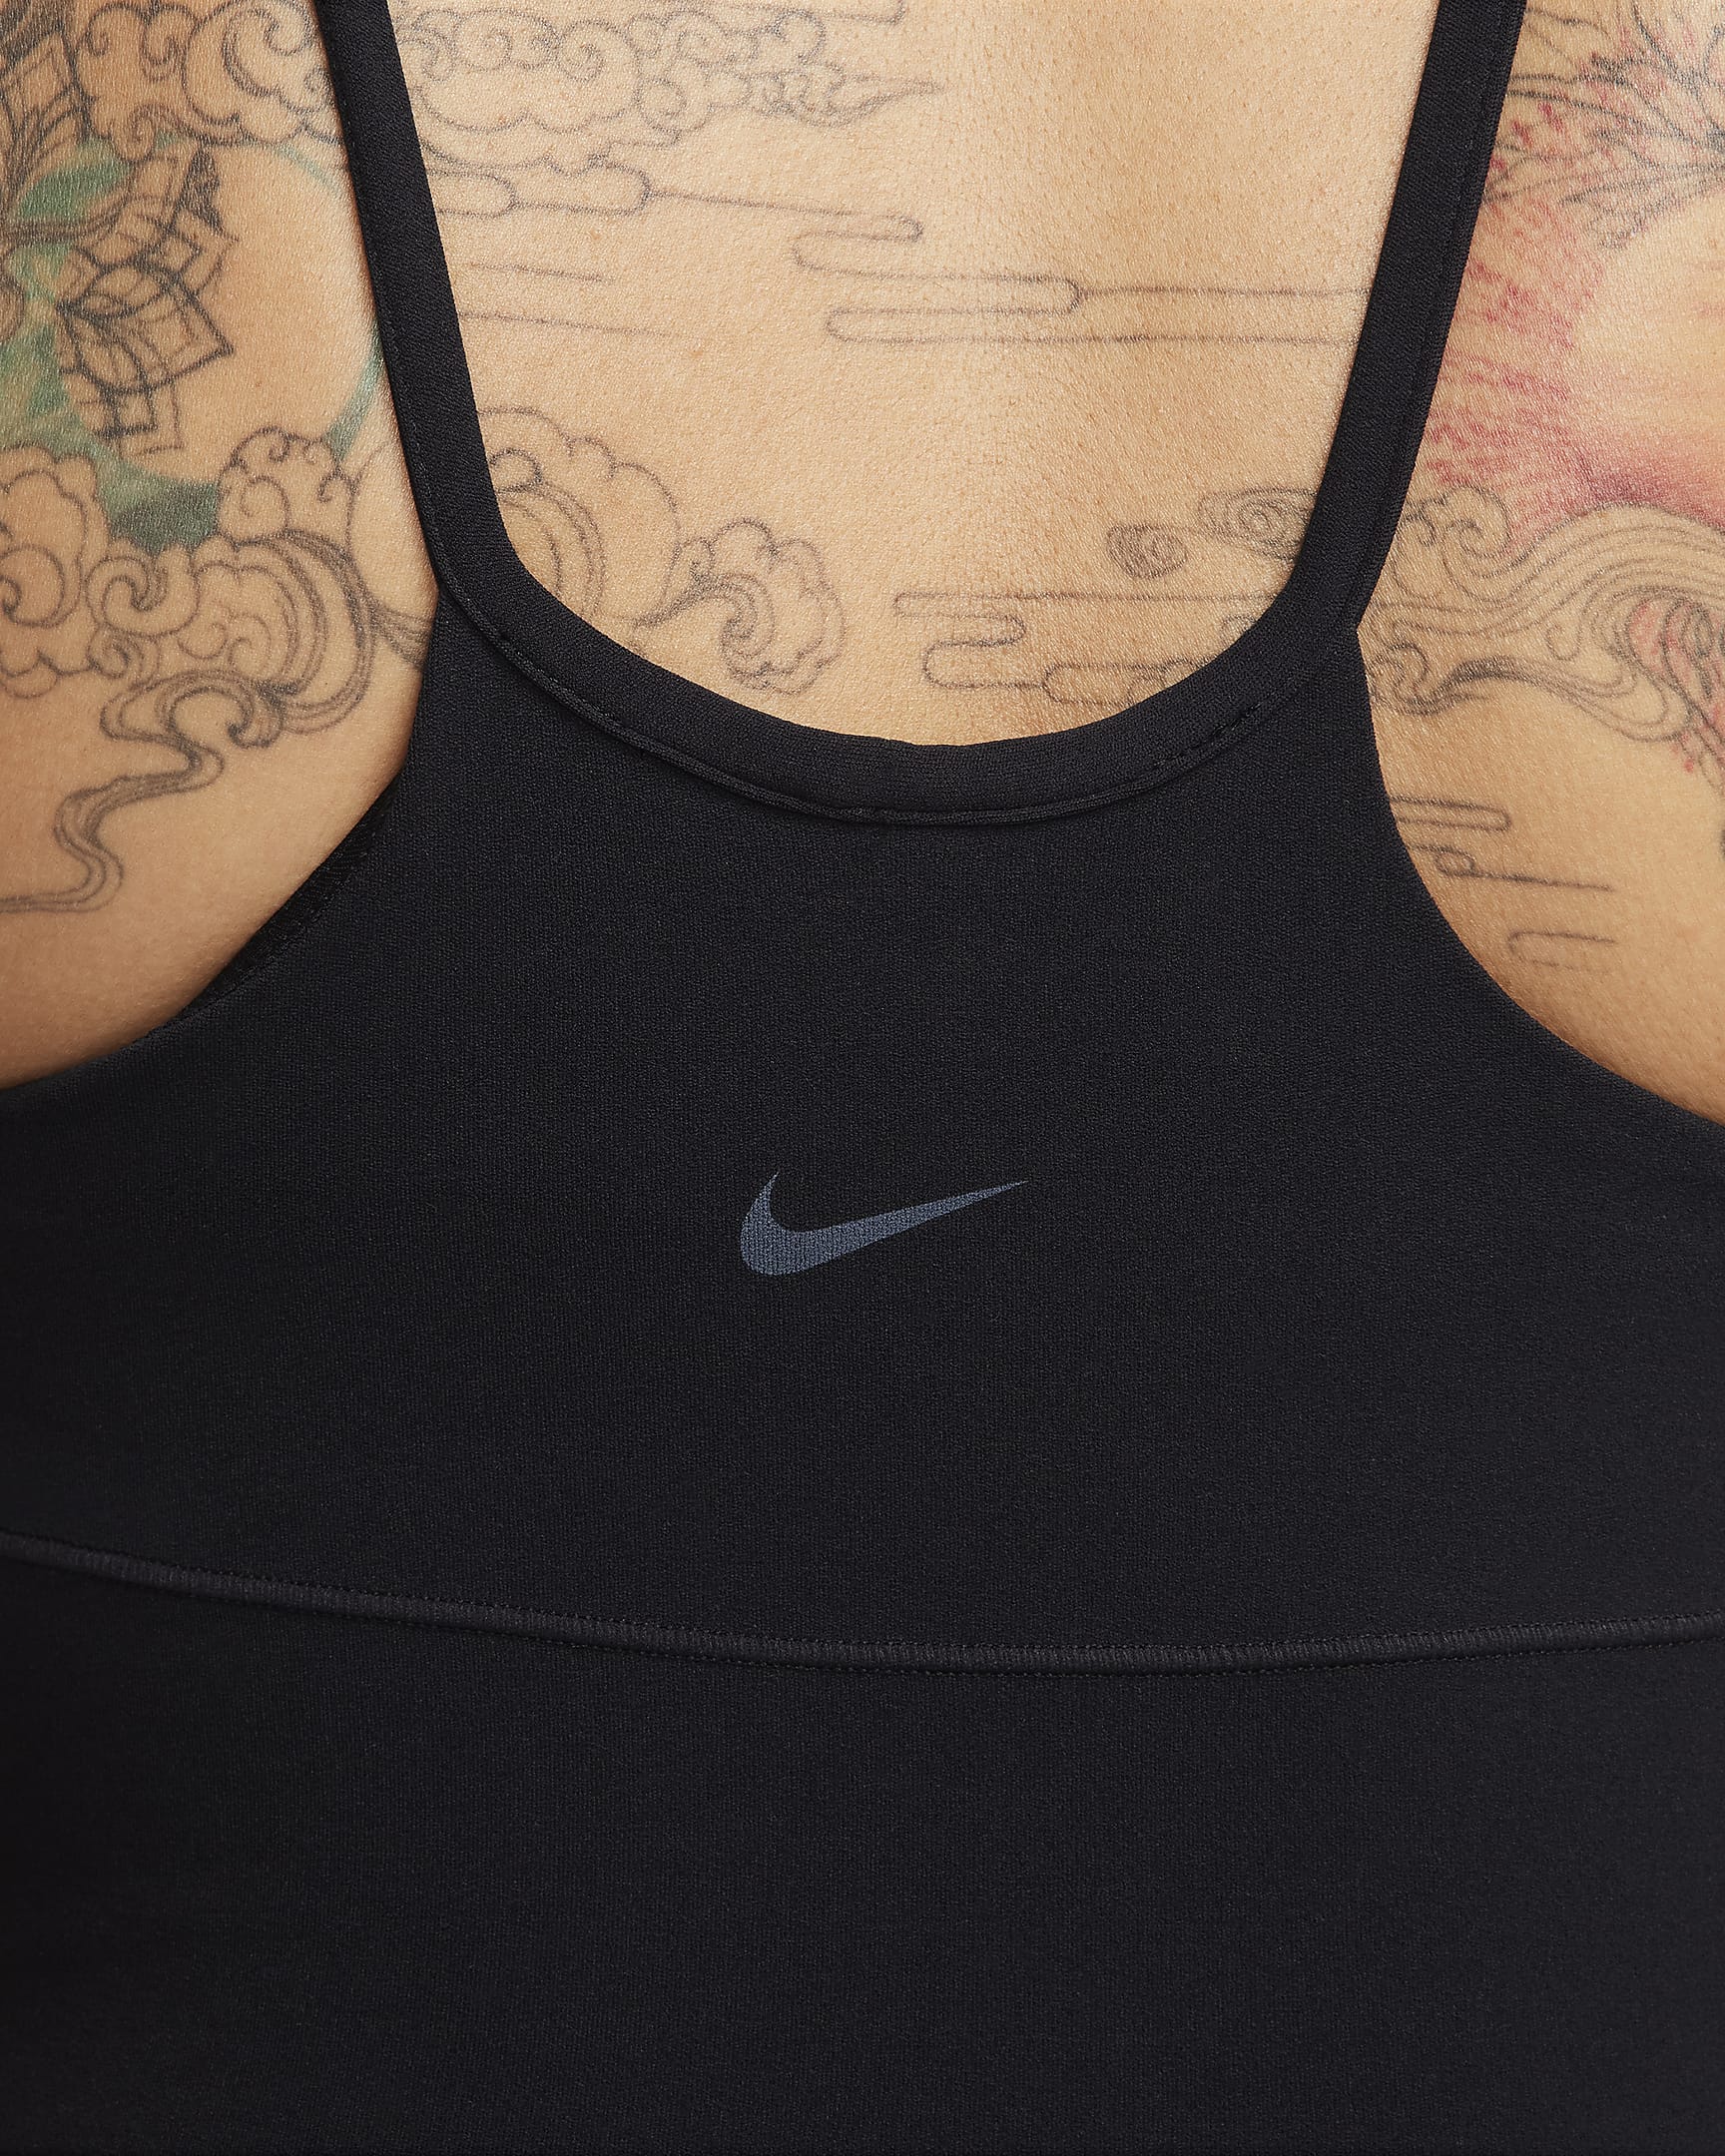 Nike Zenvy Women's Dri-FIT Full-Length Flared Bodysuit - Black